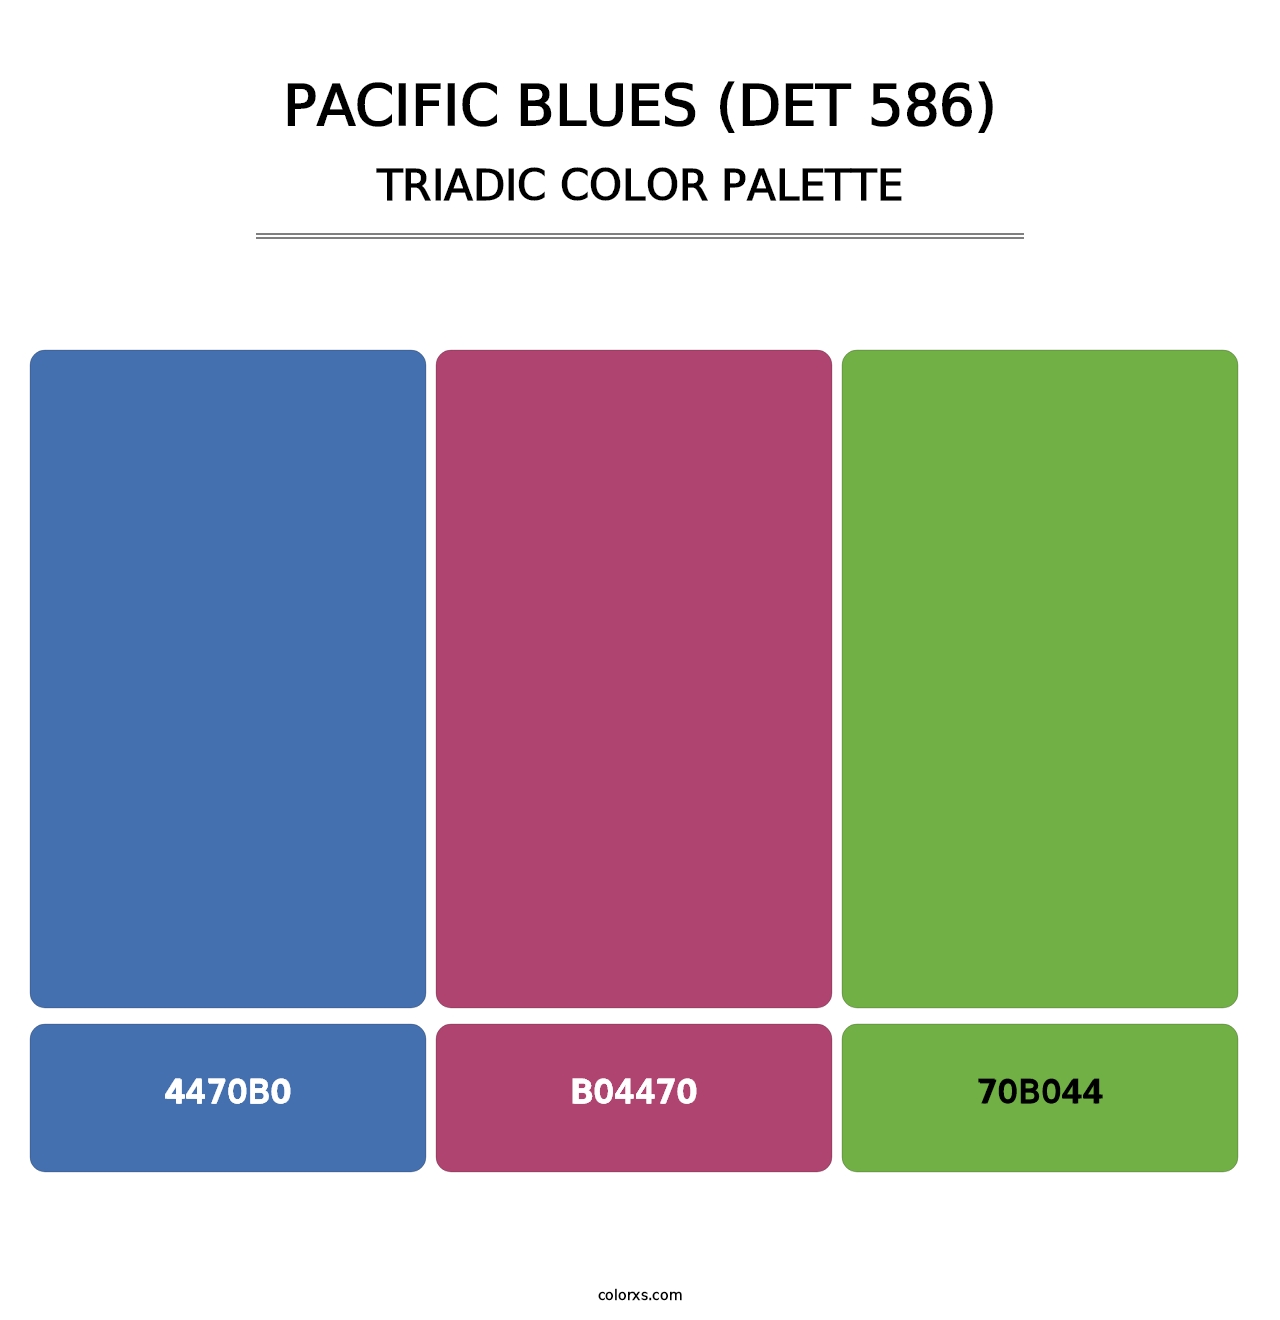 Pacific Blues (DET 586) - Triadic Color Palette